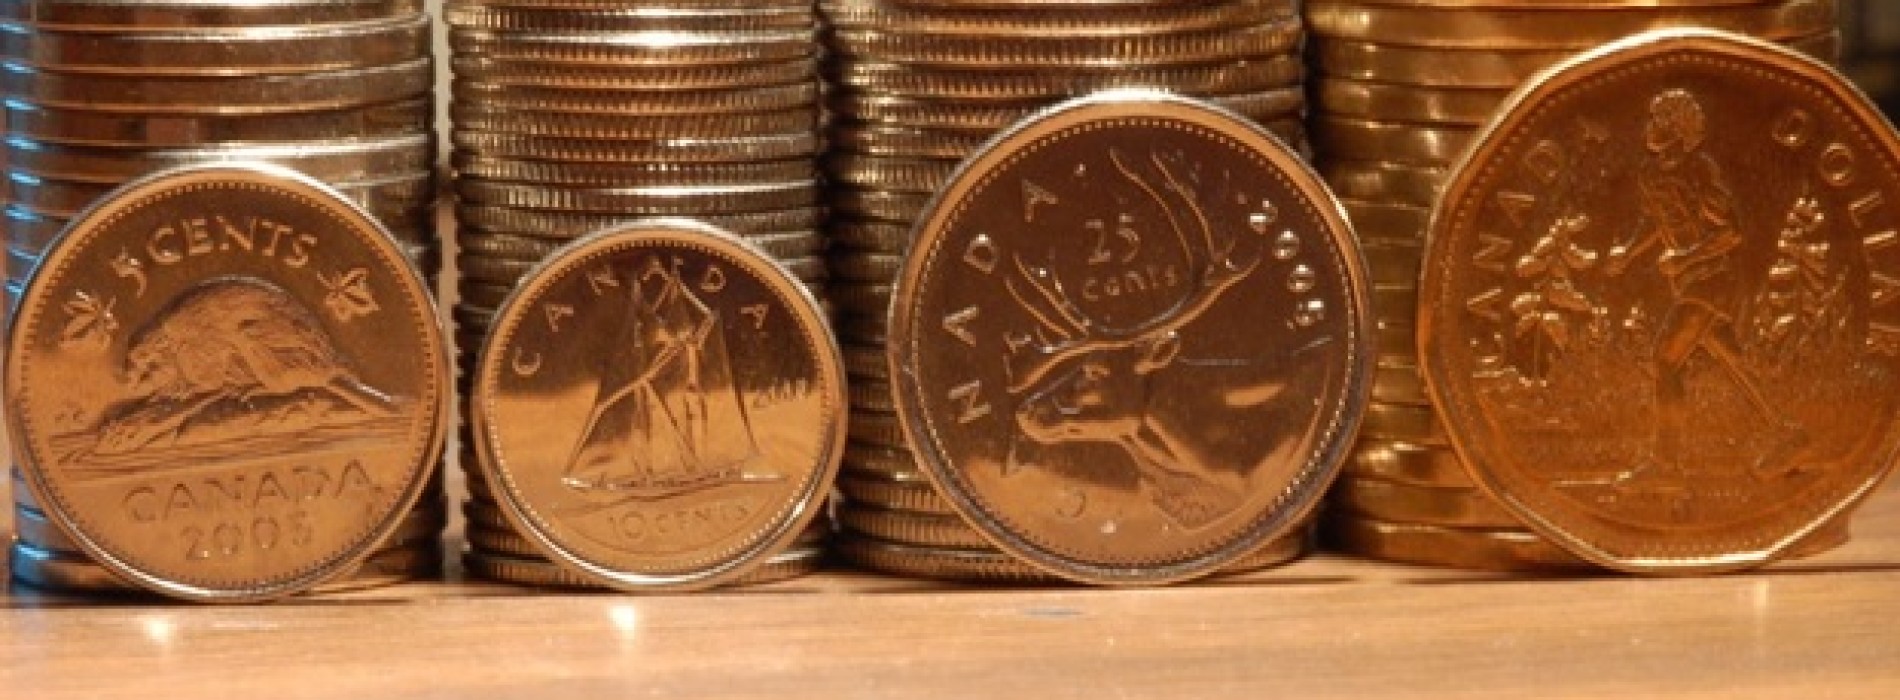 Dolar kanadyjski przed ważnymi danymi